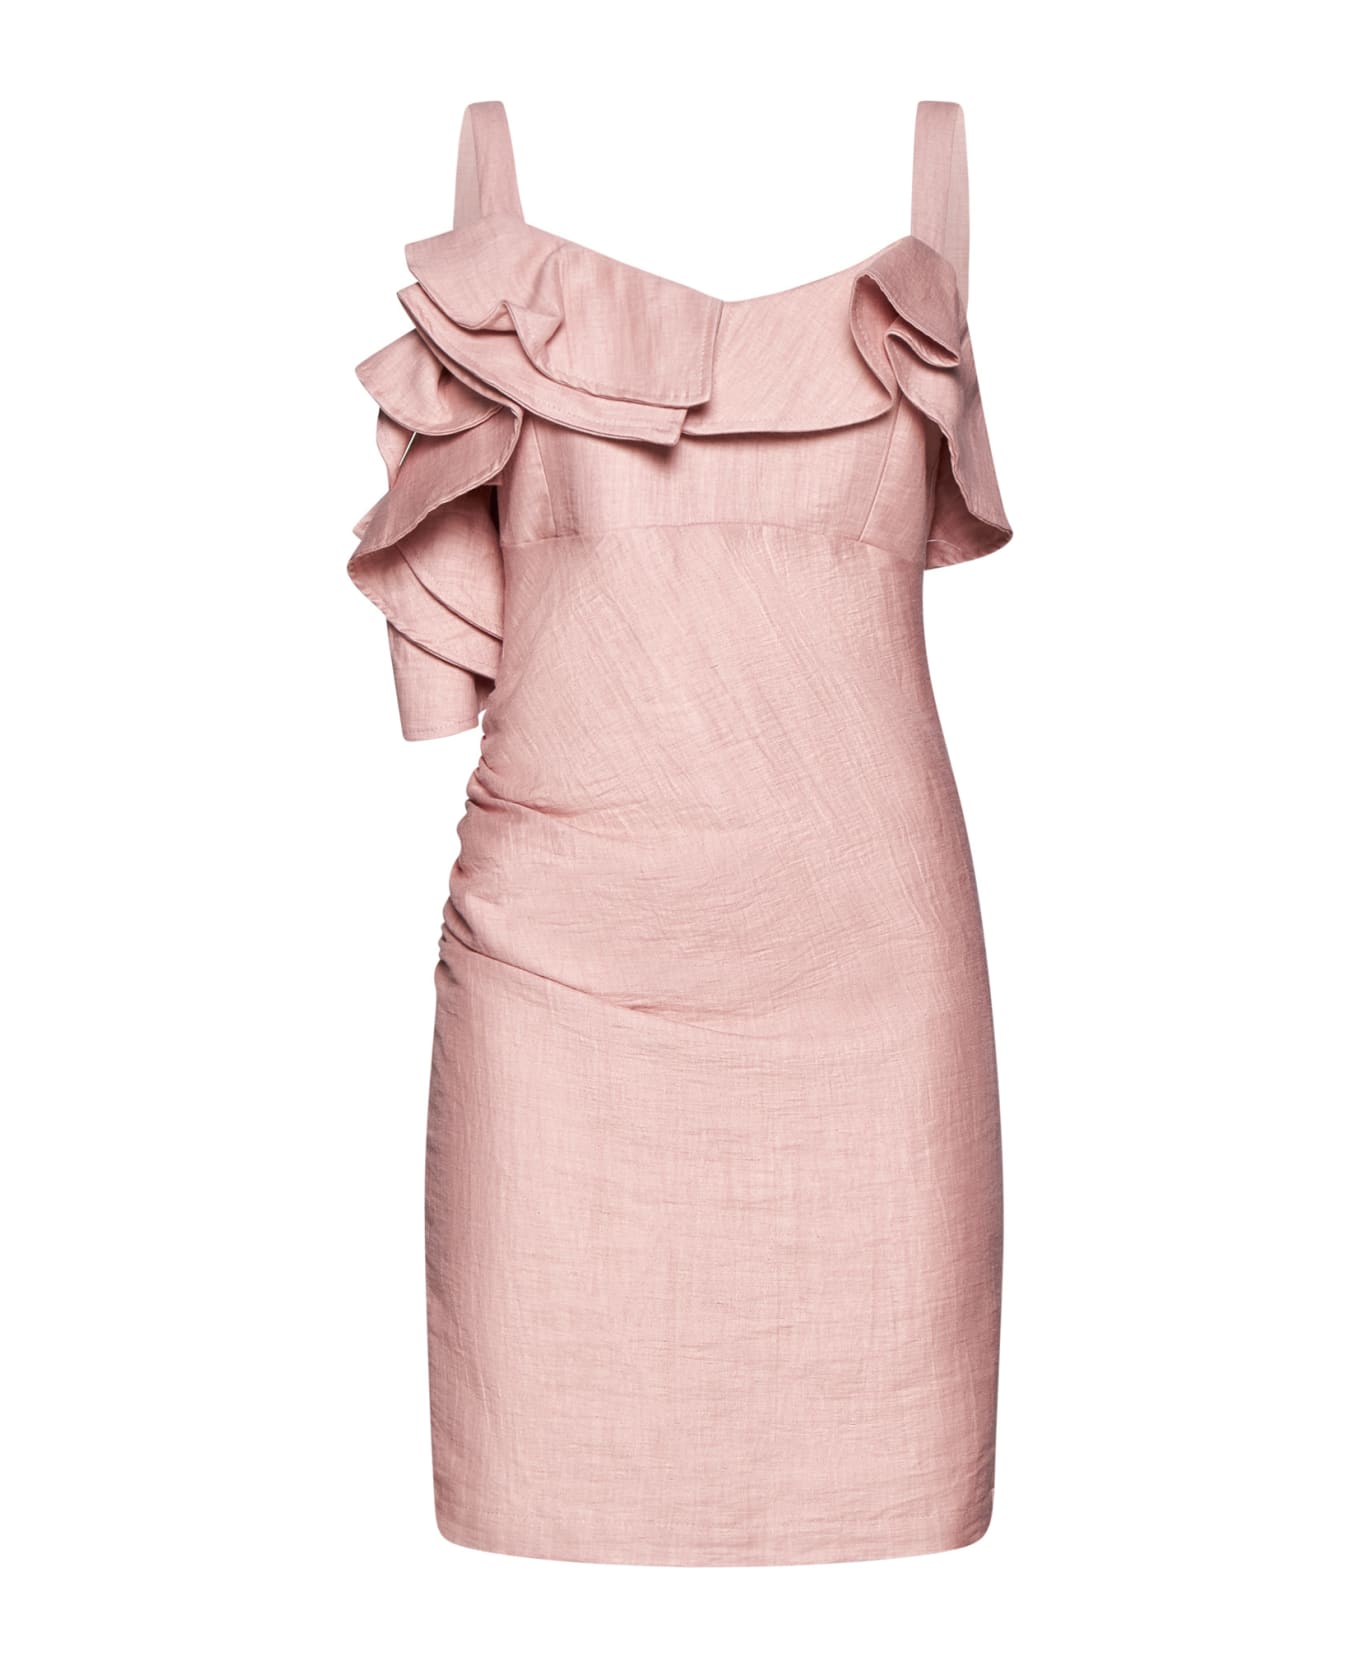 Kaos Dress - Pink